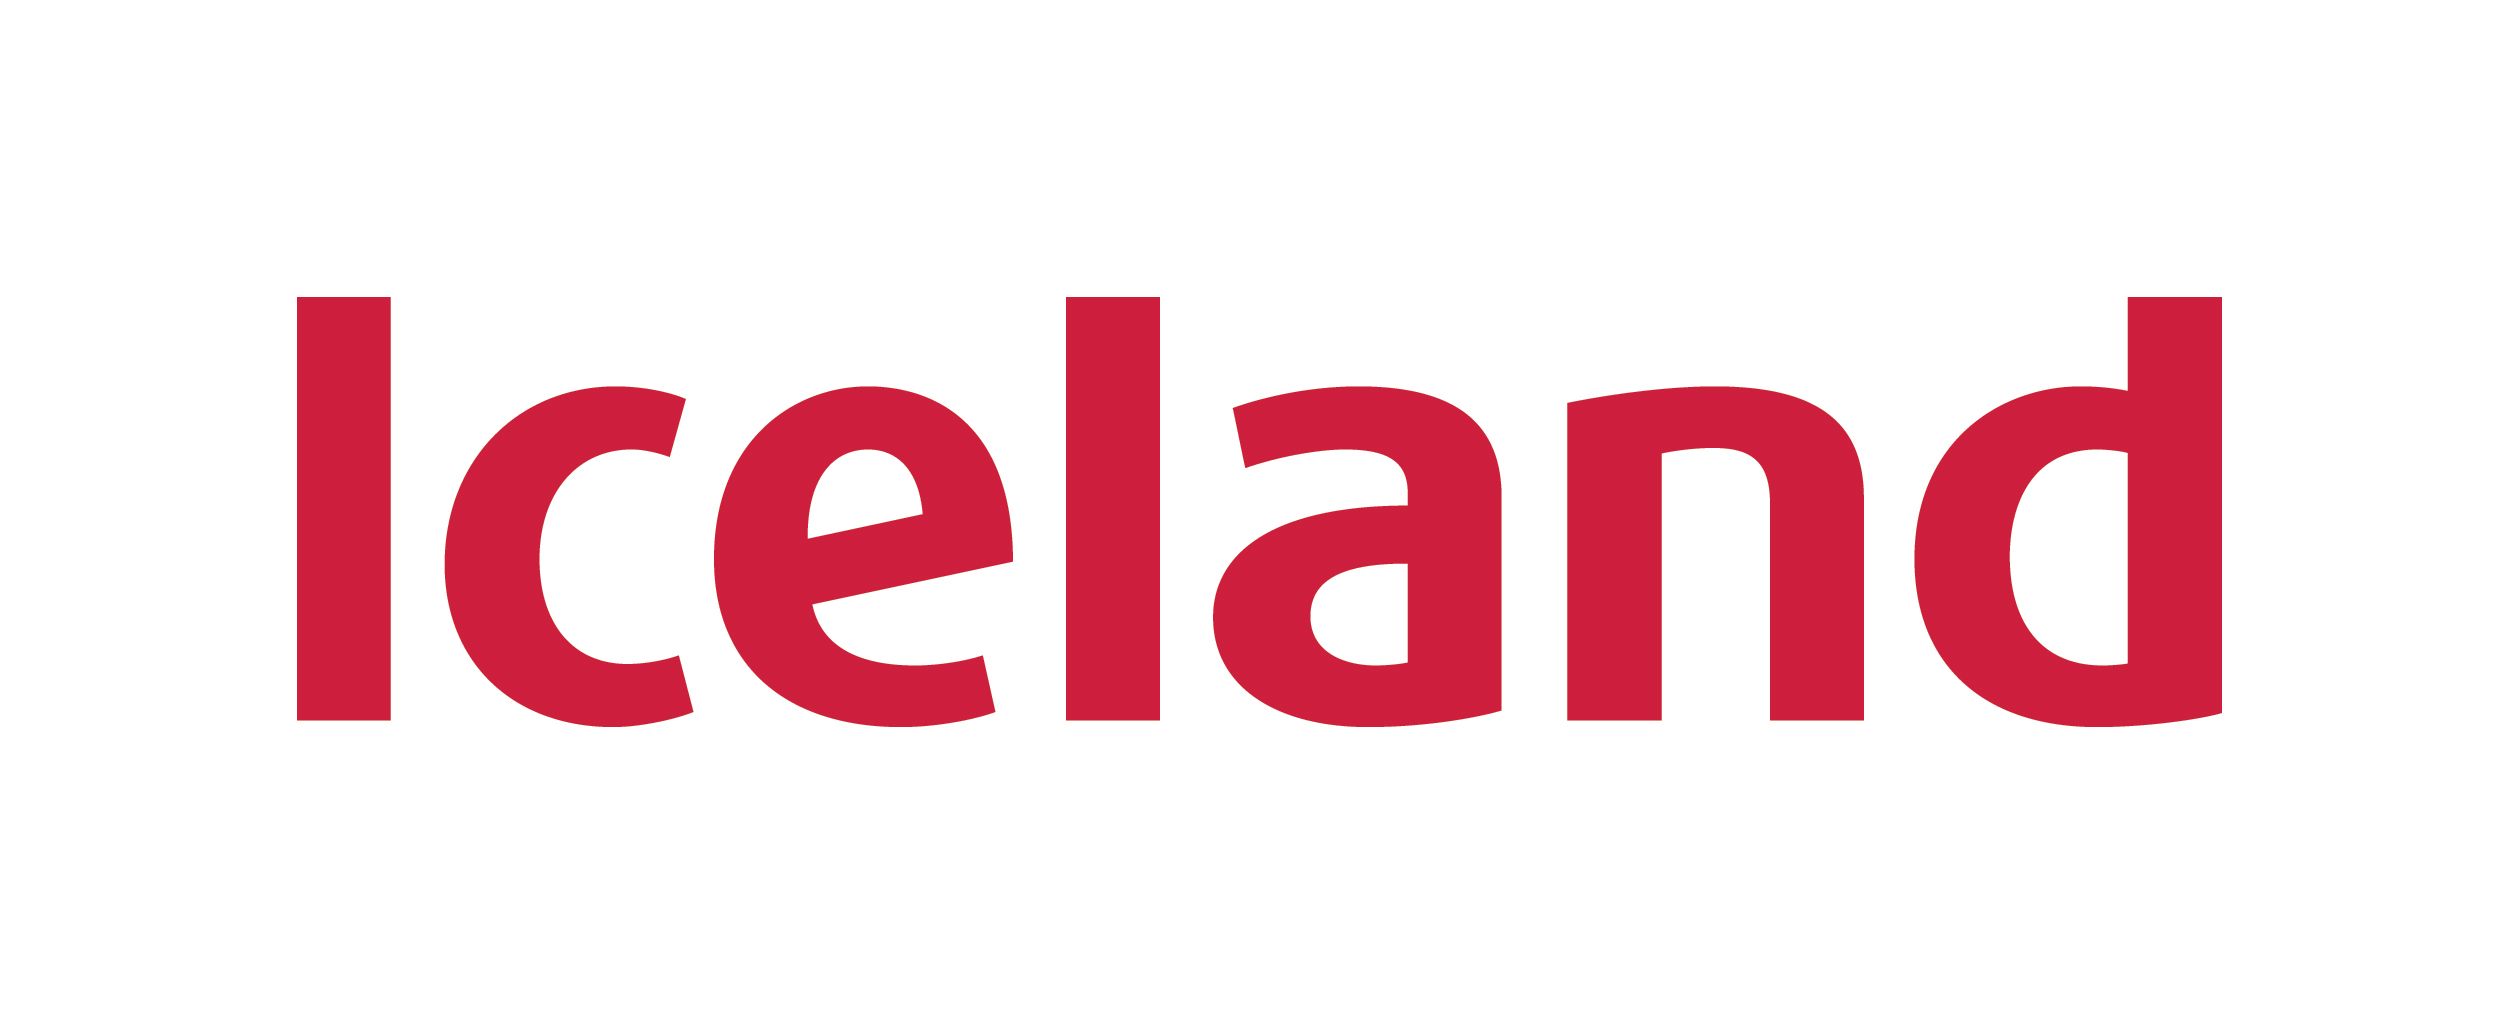 iceland_logo_rectangle.jpg